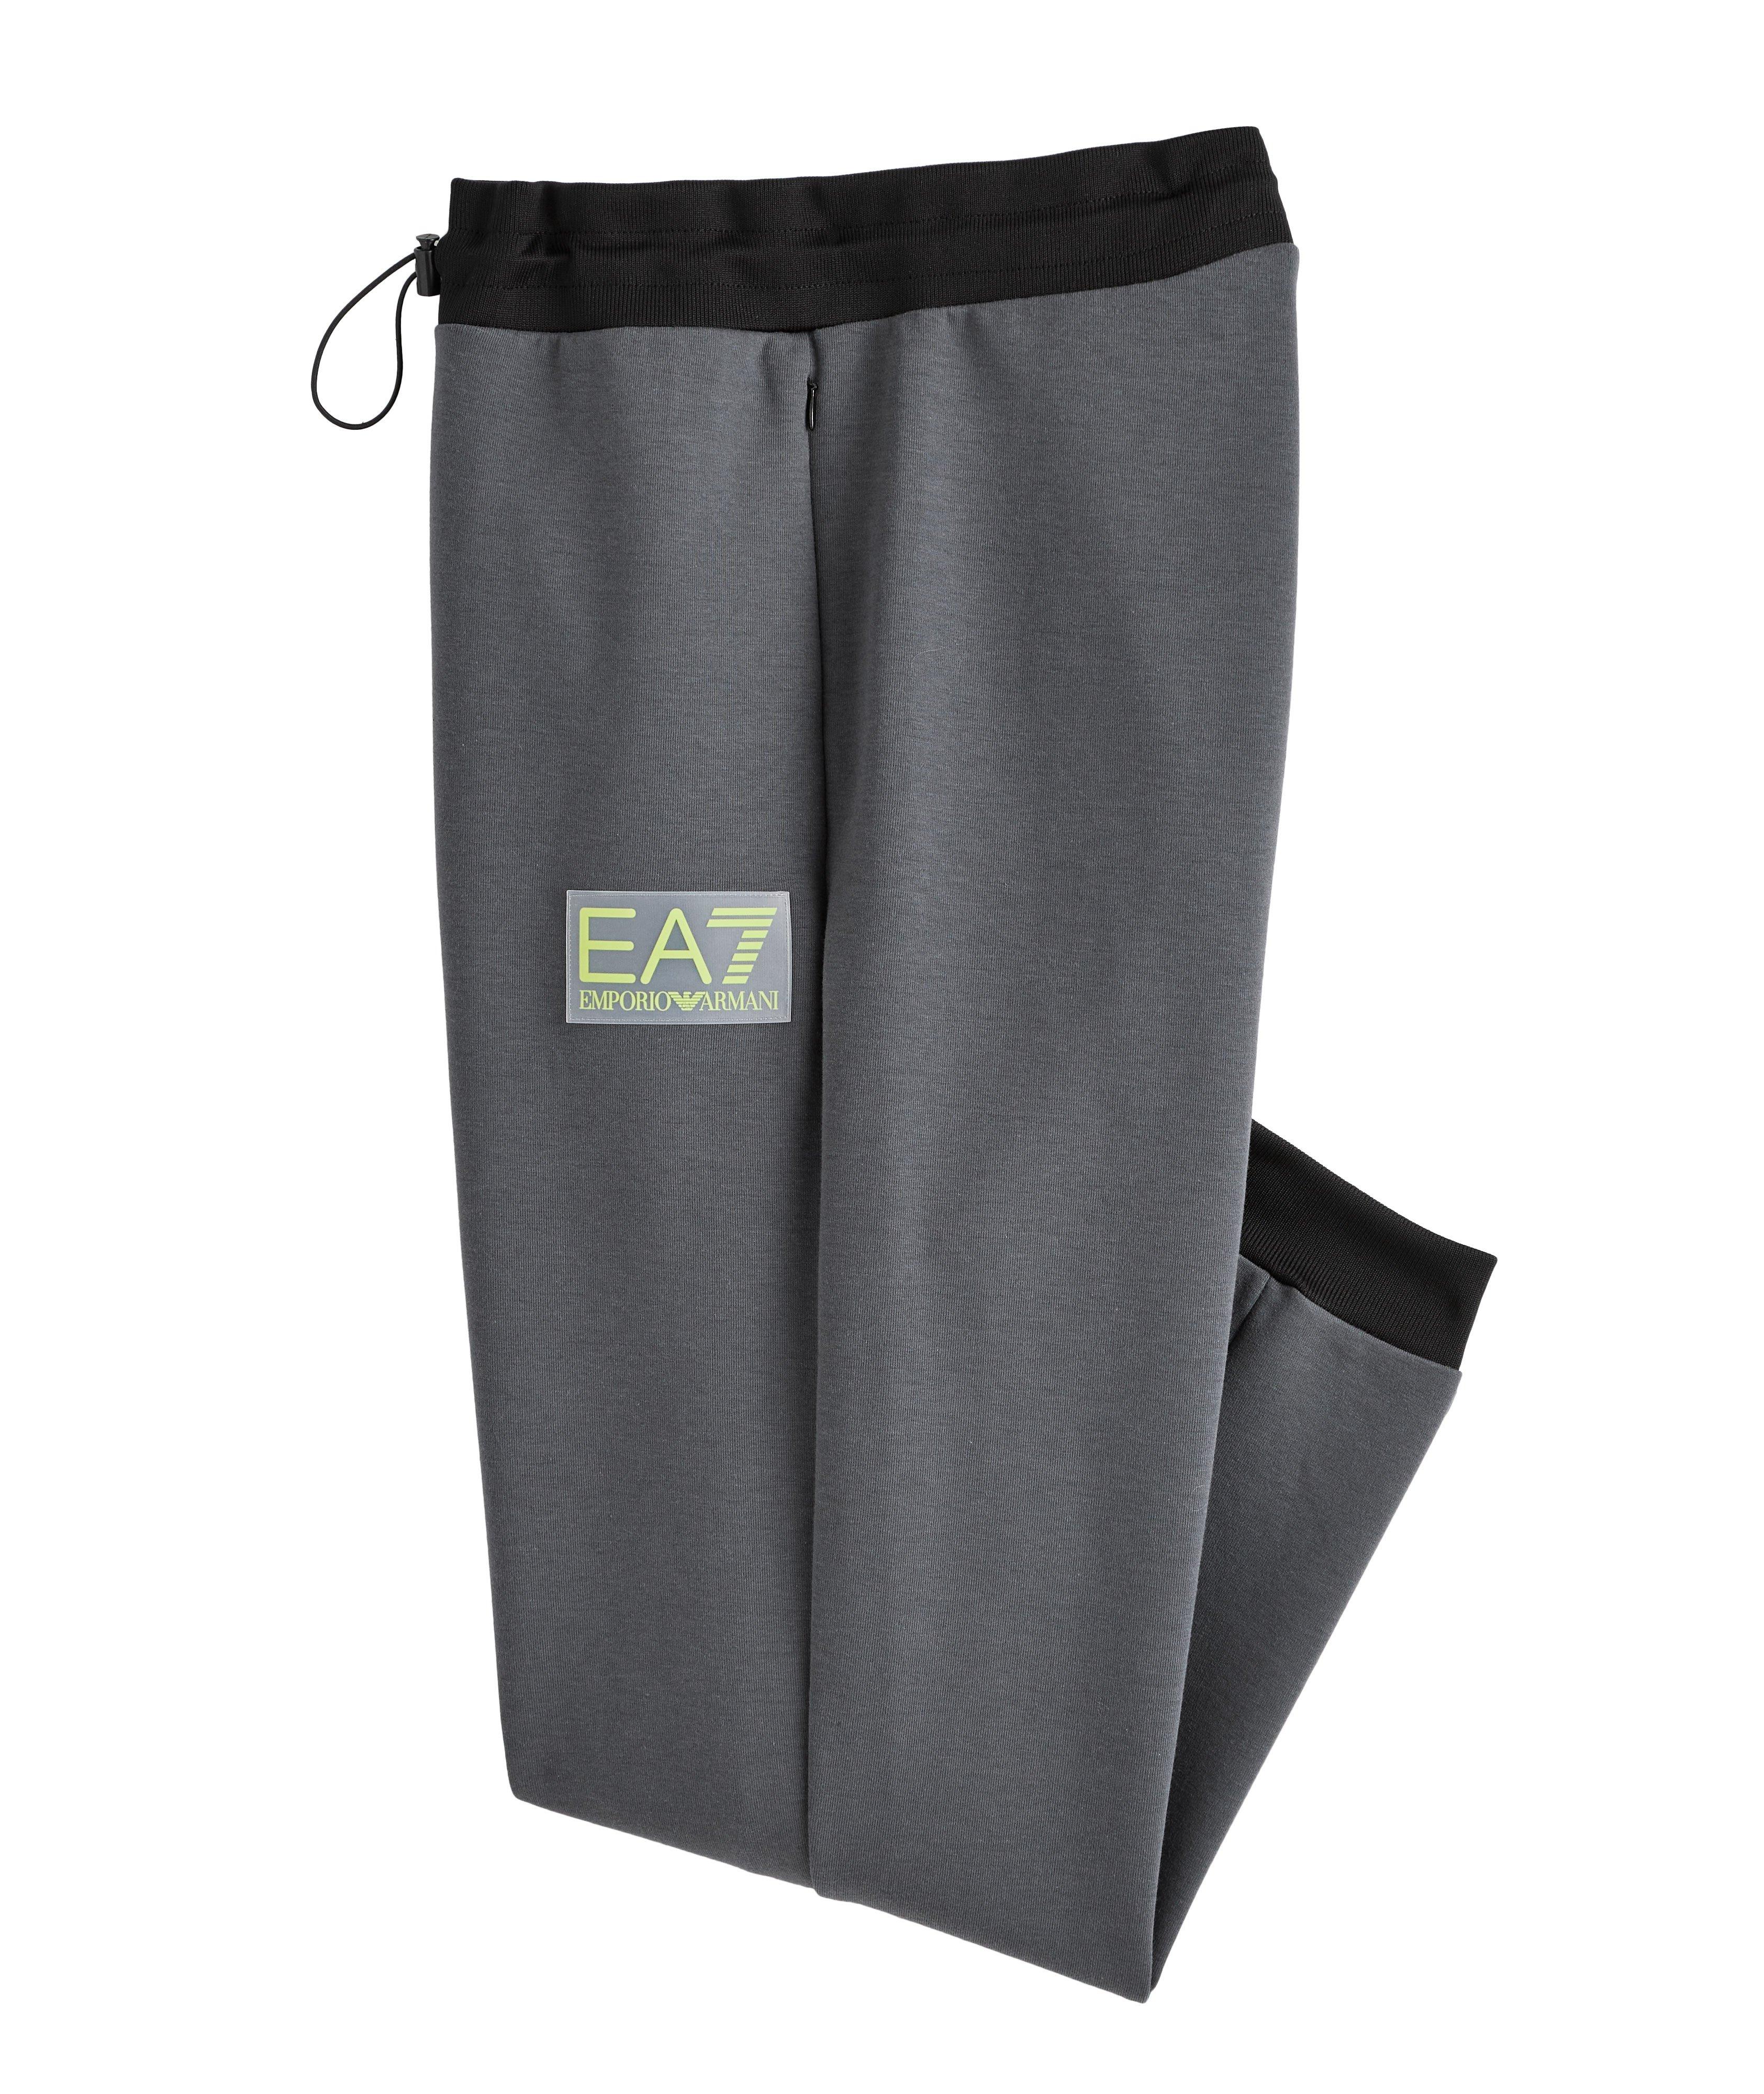 Pantalon sport en mélange de coton, collection EA7 image 0